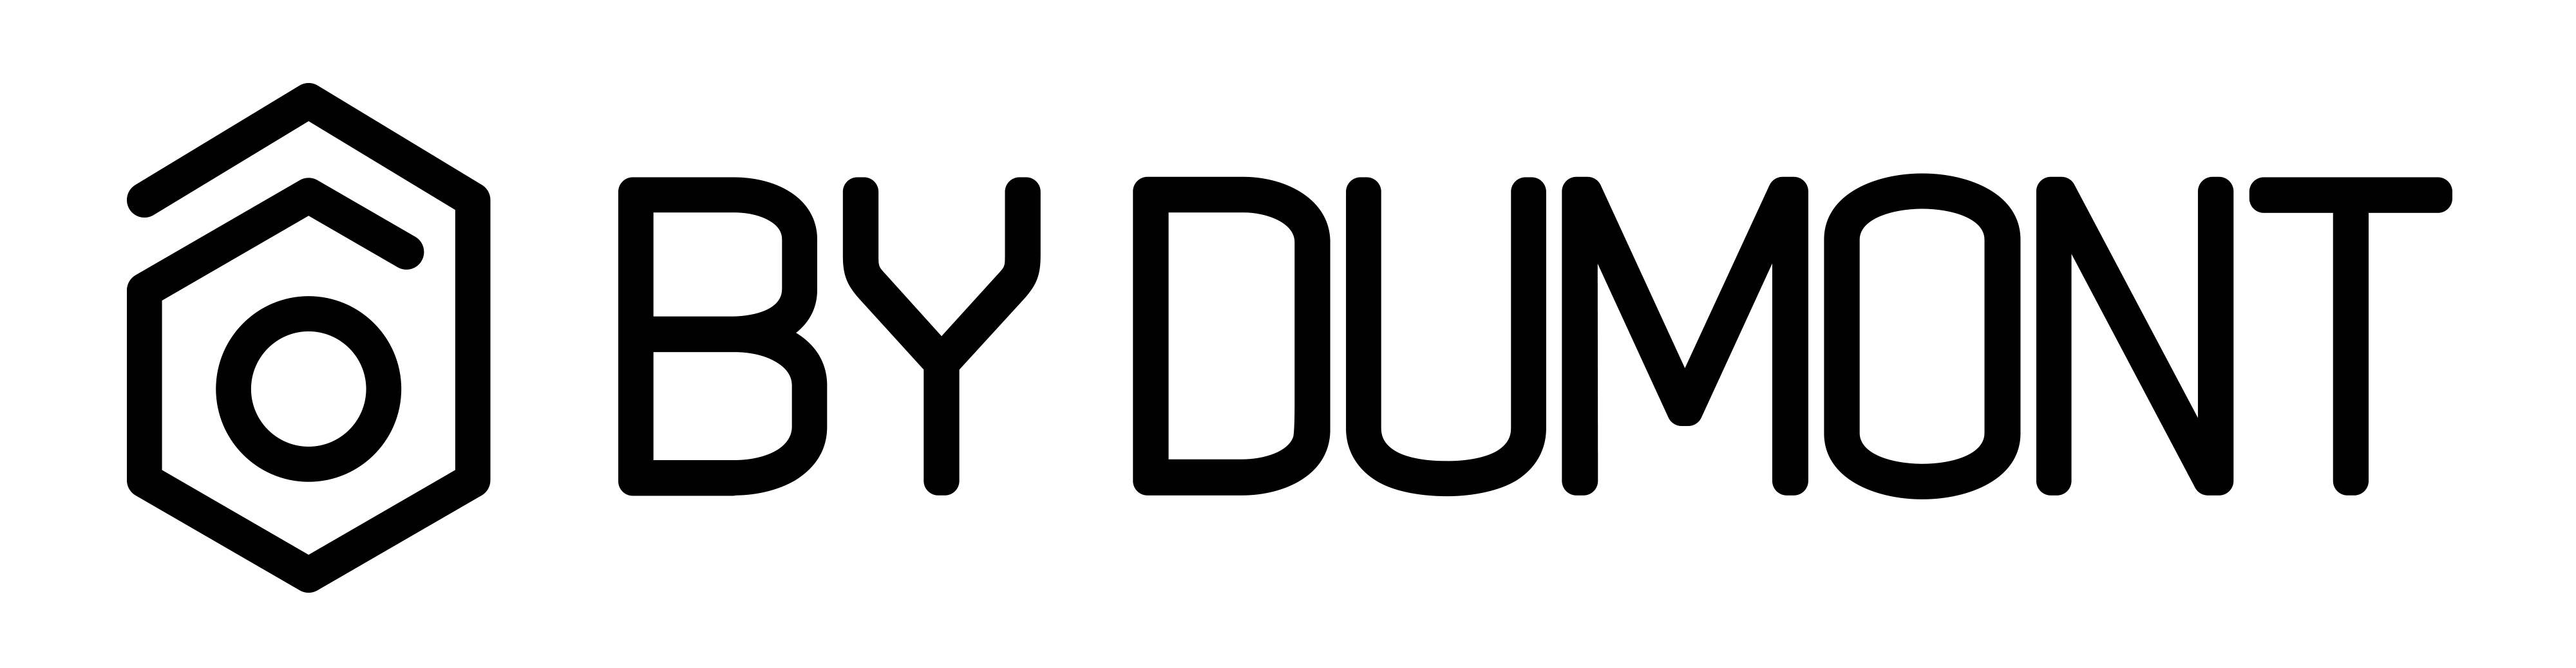 Dumont Logo - By Dumont | Freelance Filmmaker